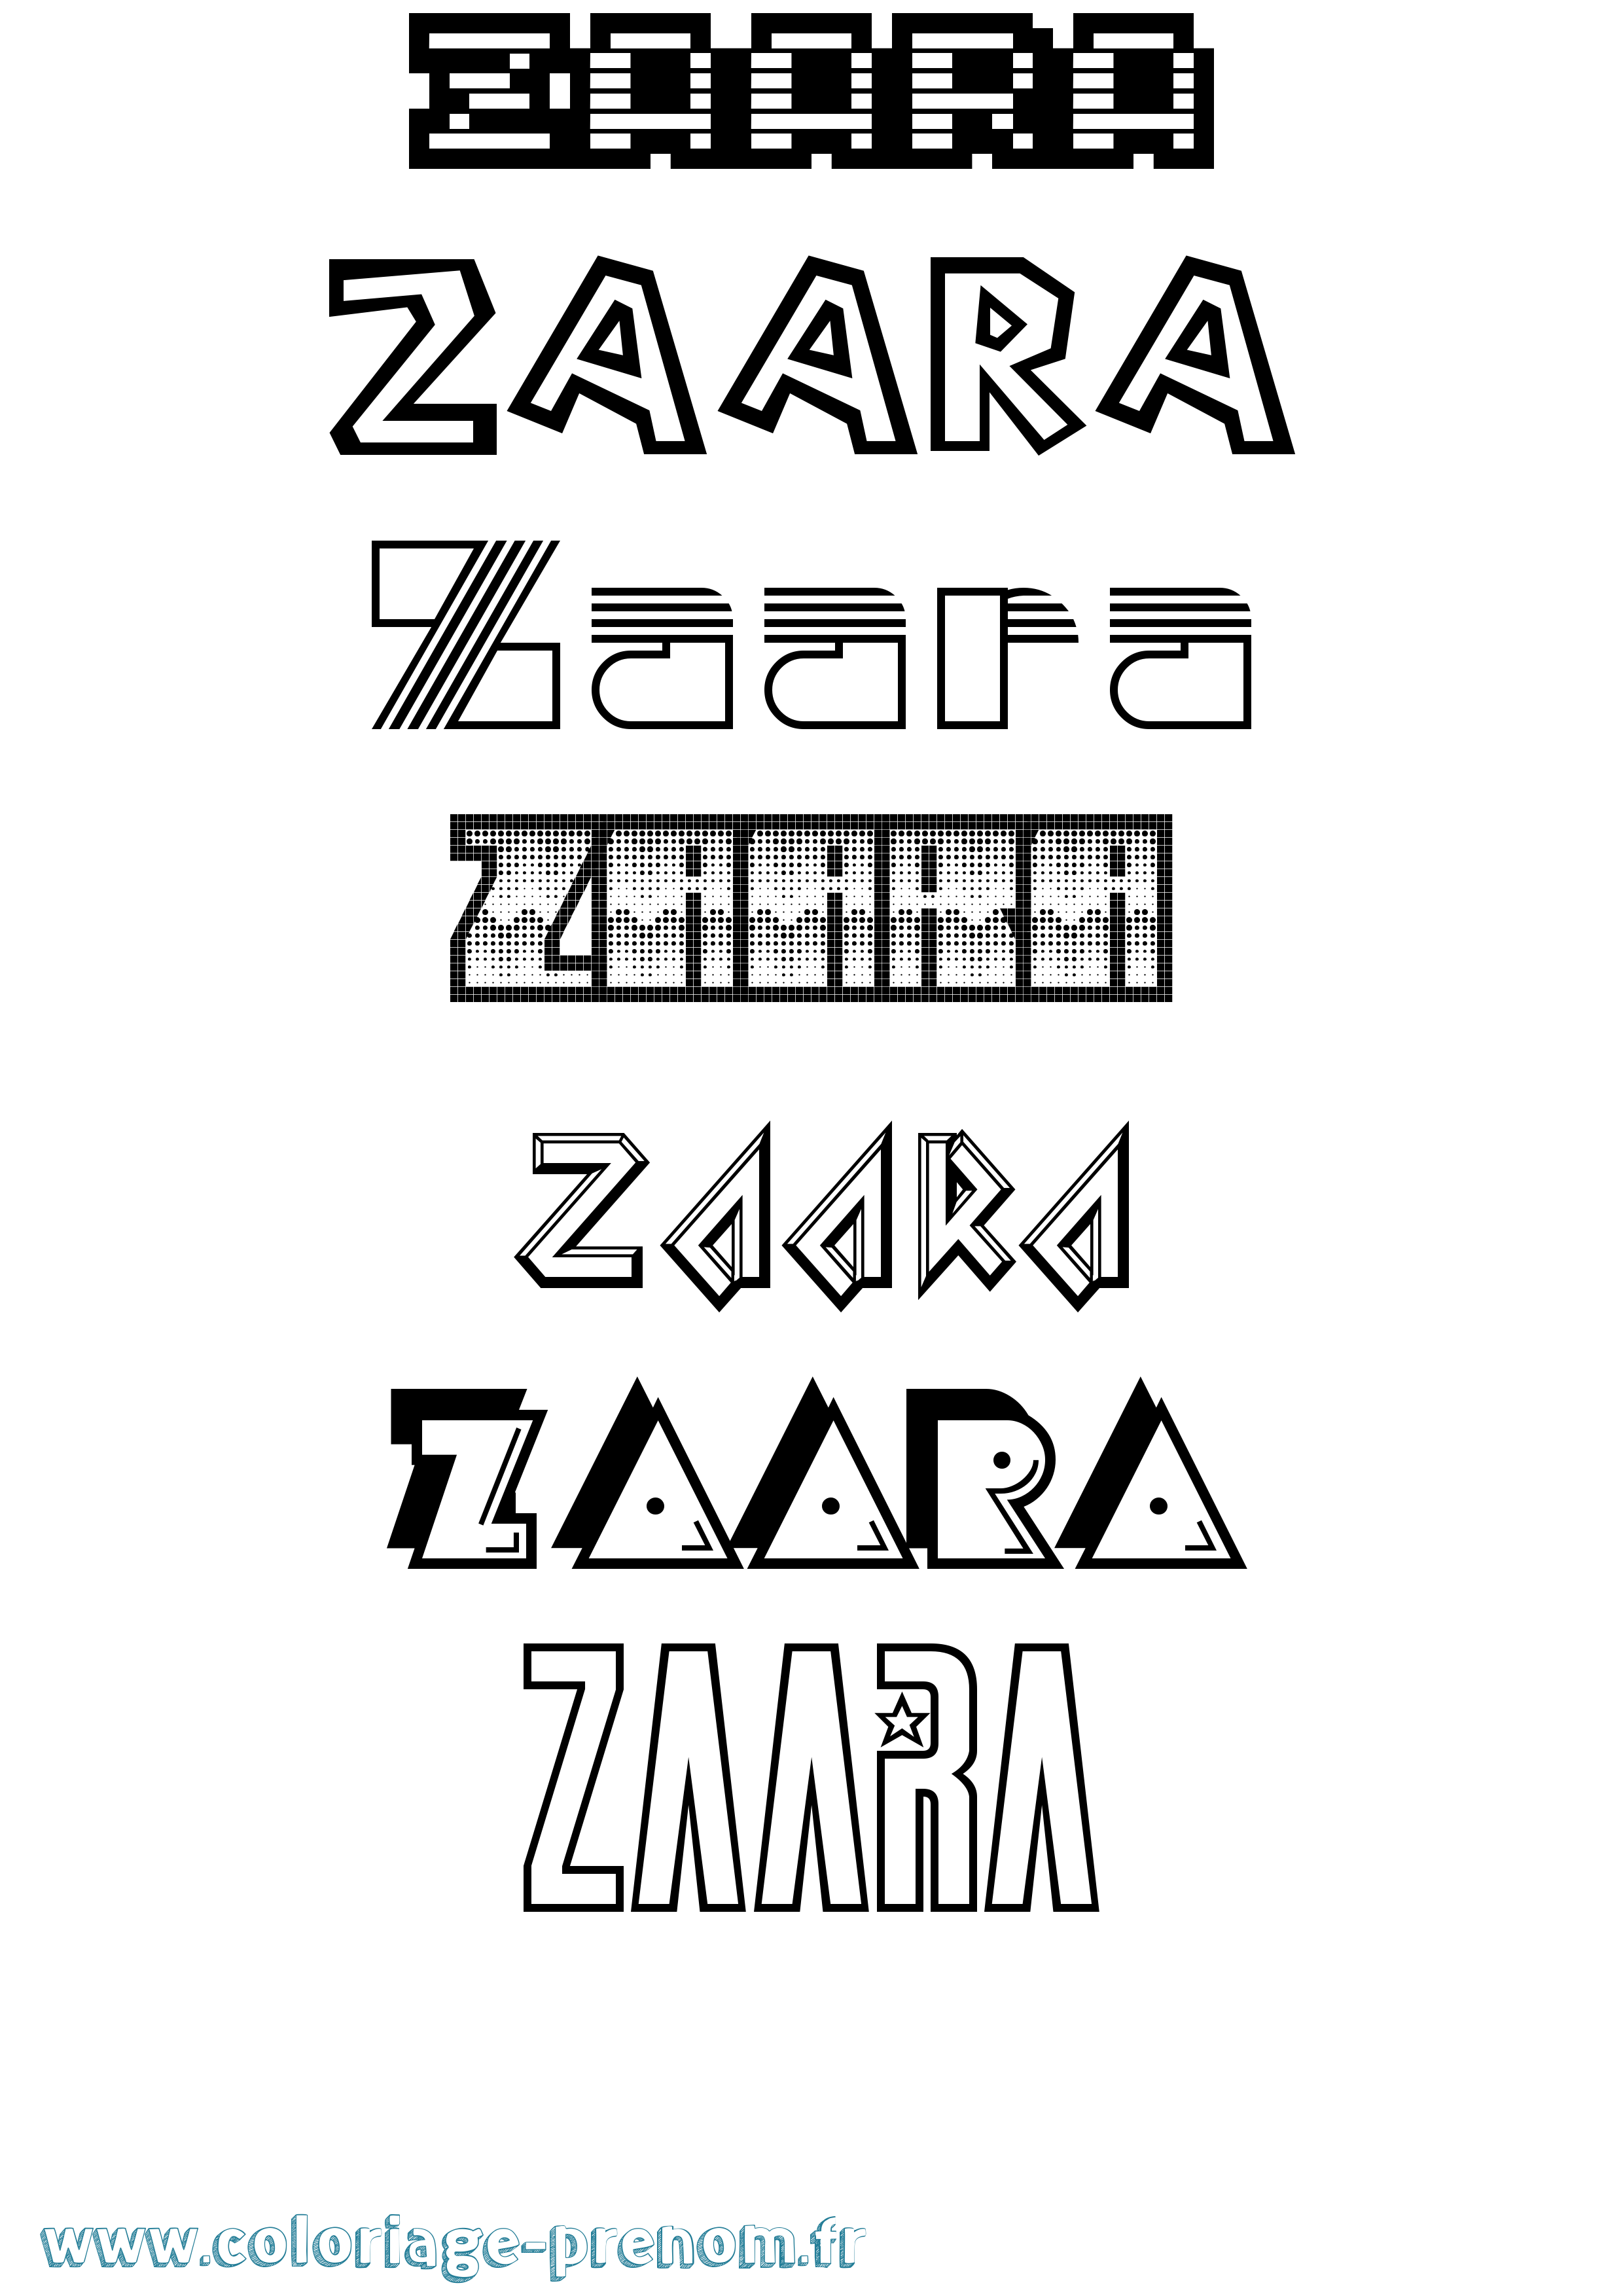 Coloriage prénom Zaara Jeux Vidéos